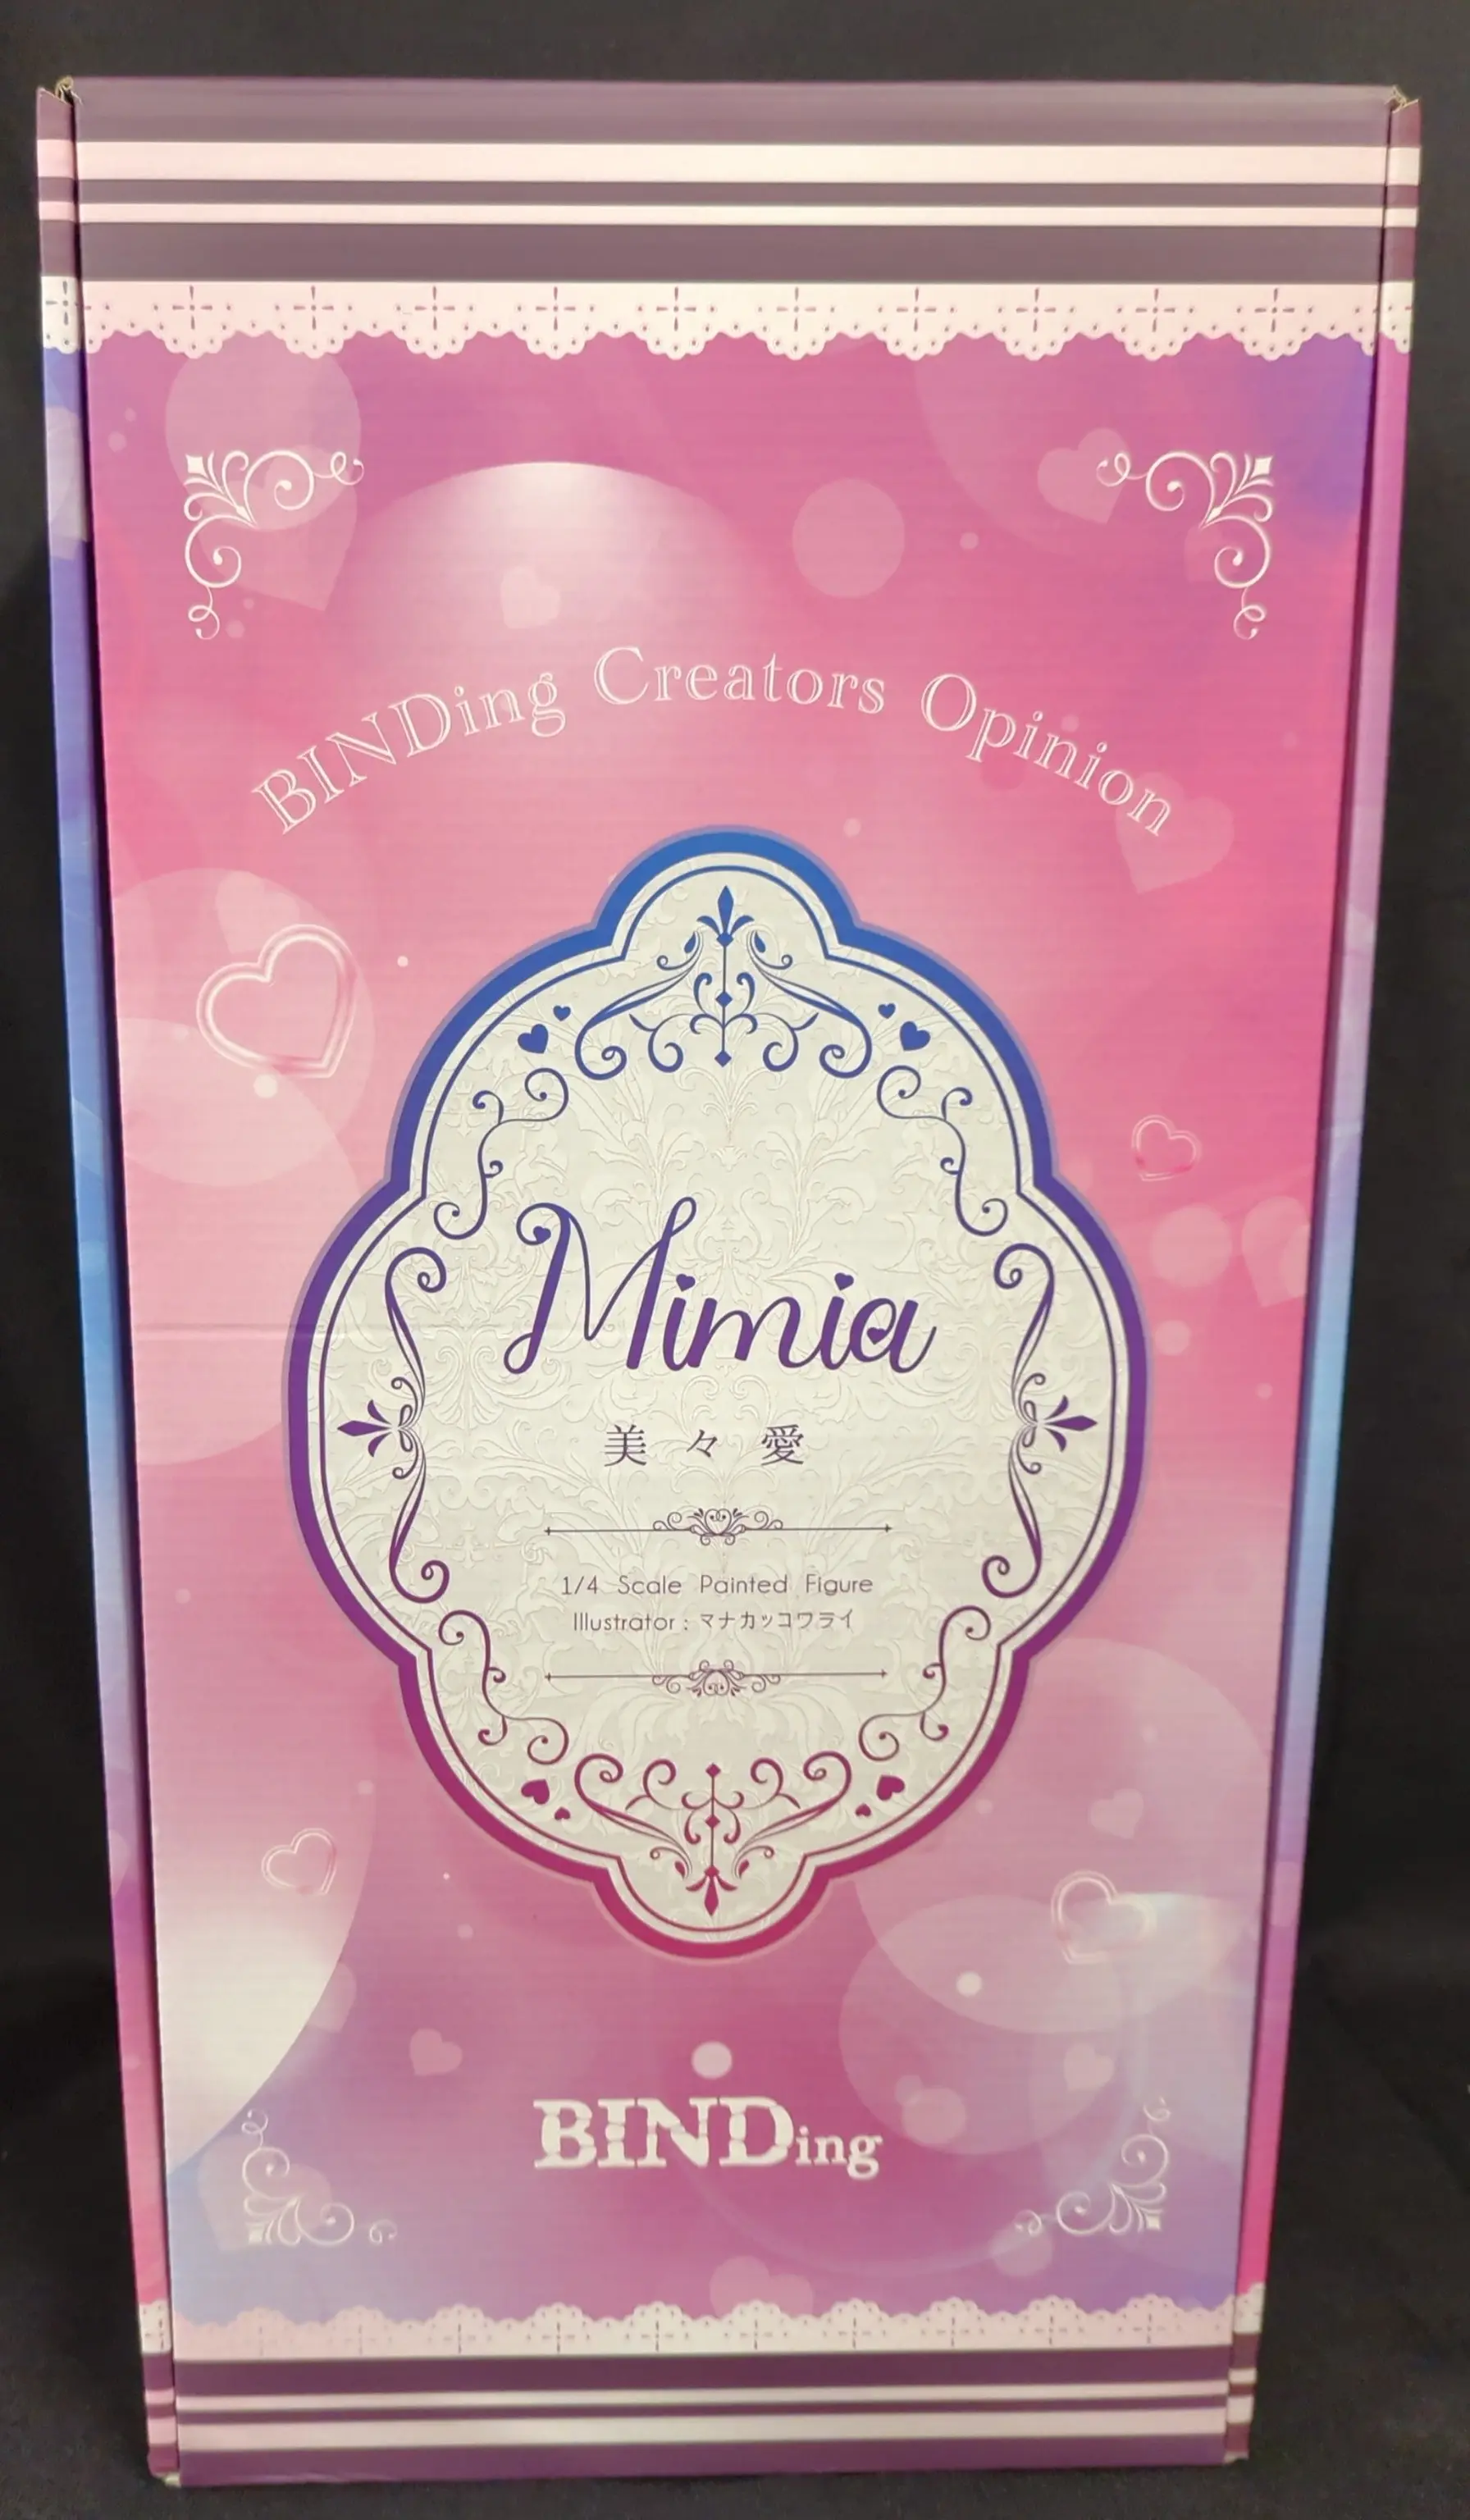 Binding Creator's Opinion - BINDing - MIMIA